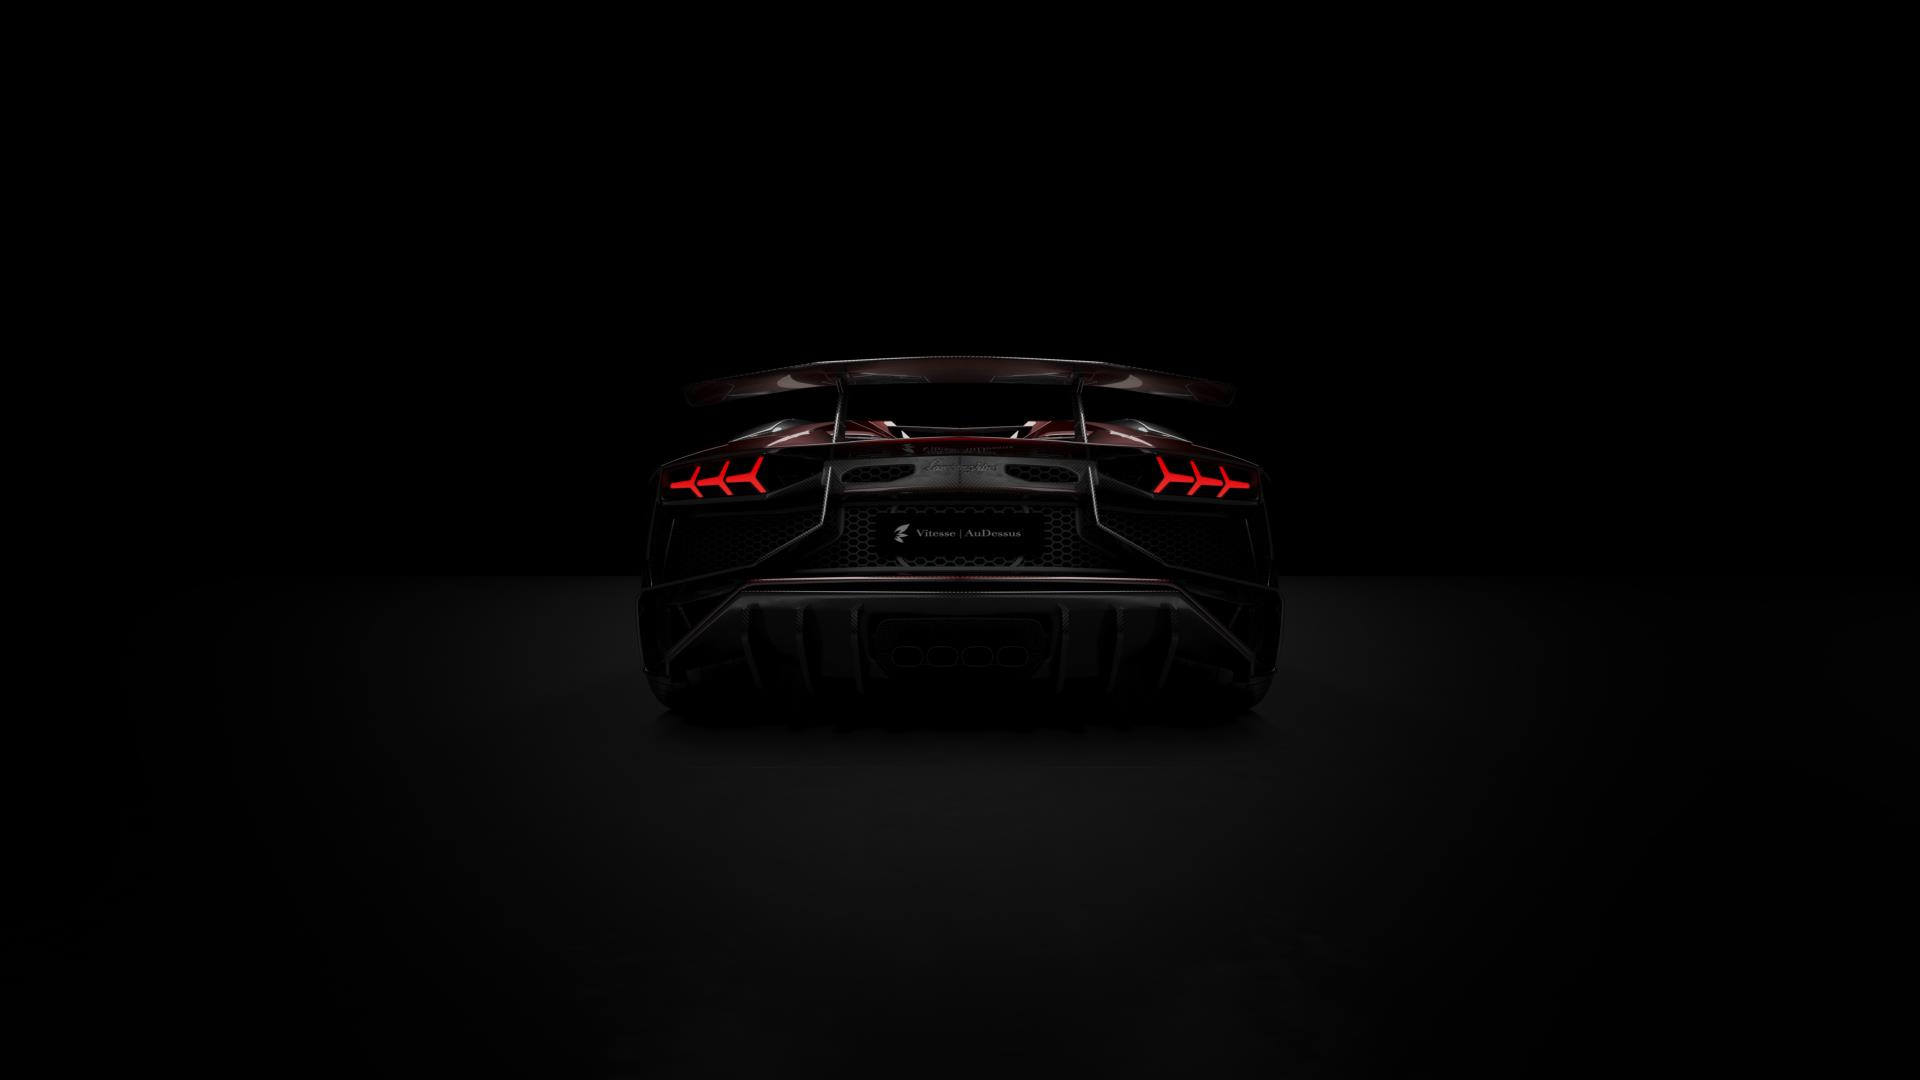 Lamborghini Aventador SV Carbon Fiber Package от Vitesse AuDessus